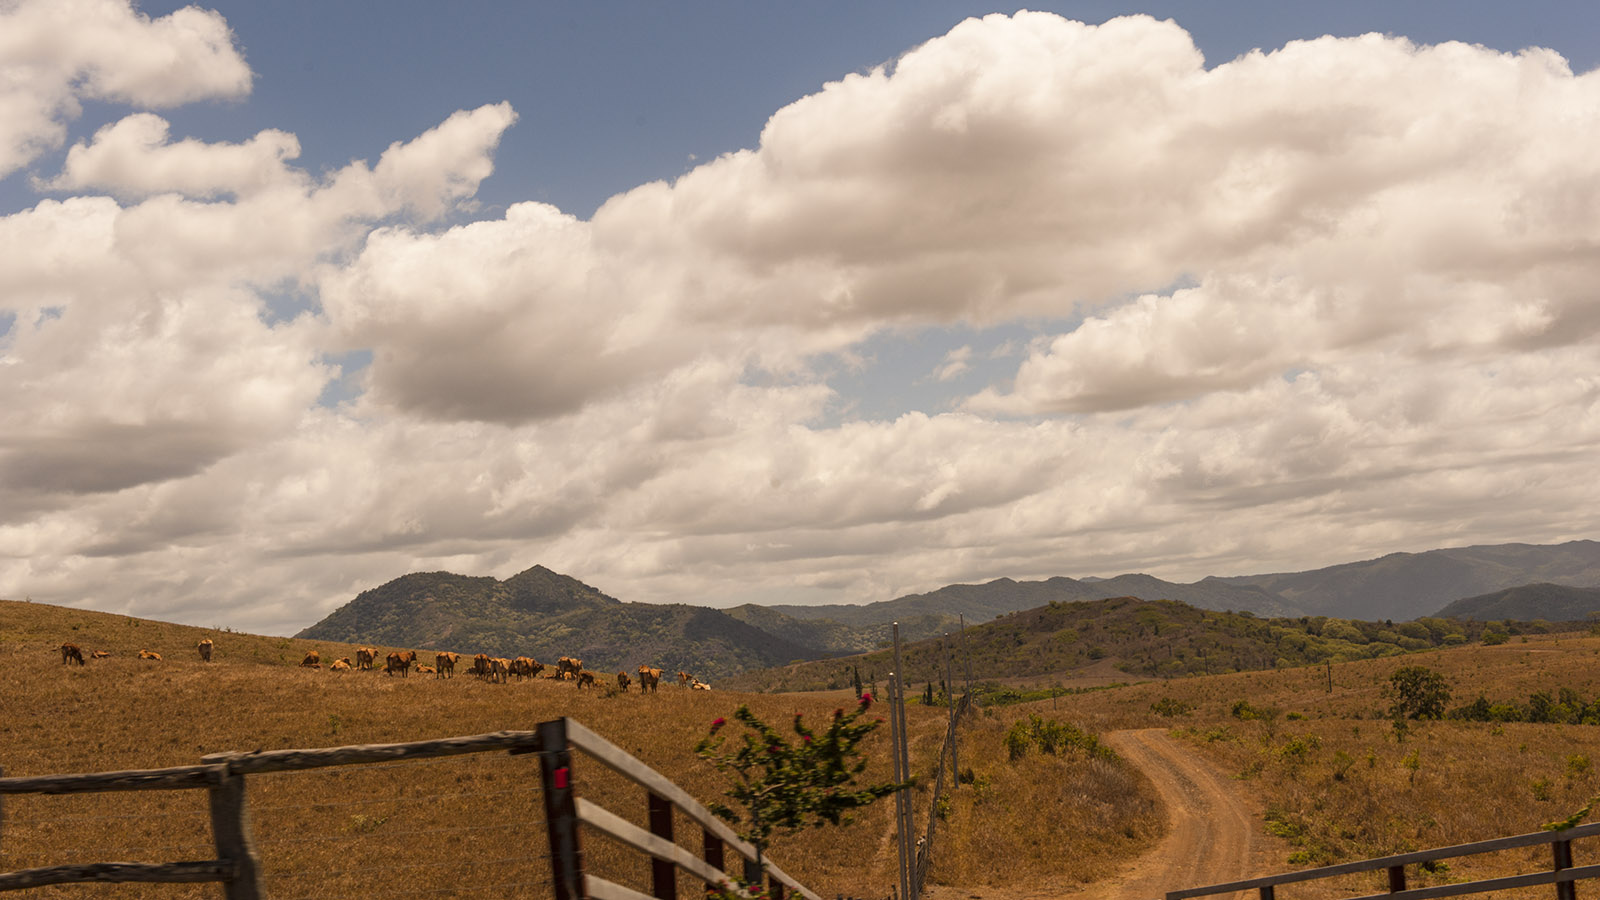 Neukaledonien: Brahmousin-Rinder, gekreuzt aus Brahman- und Limousin-Rindern, weiden im Westen von Grande Terre. Foto: Hilke Maunder